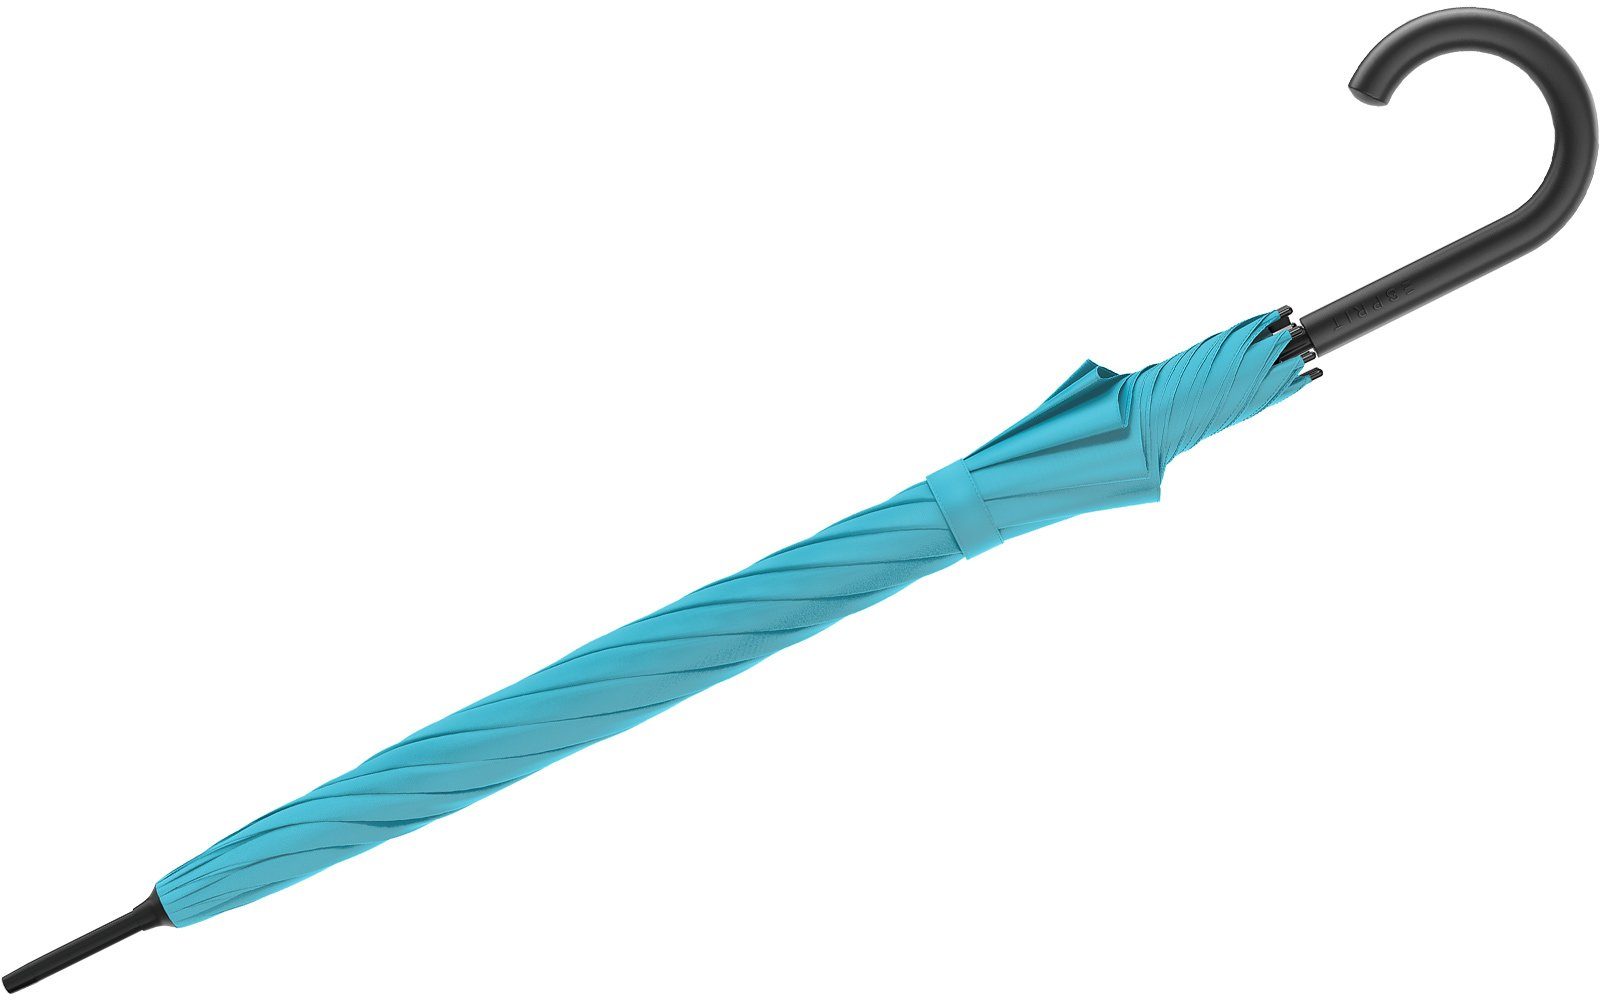 Esprit Langregenschirm den mit stabil, Automatik FJ 2023, und Trendfarben in blau Damen-Regenschirm groß